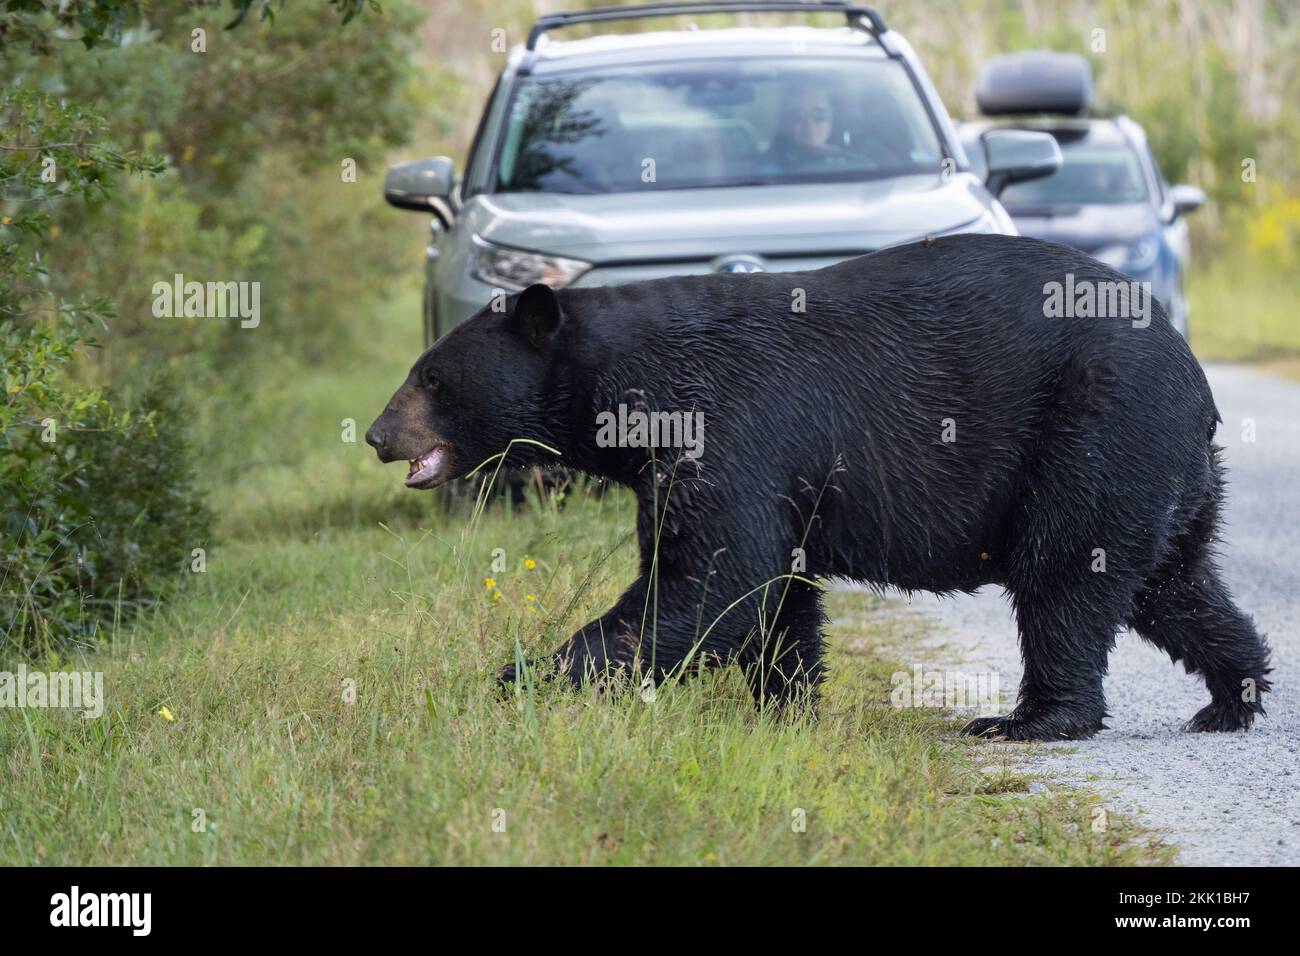 American Black Bear (Ursus americanus) attraversando la strada di ghiaia di fronte ai veicoli Foto Stock